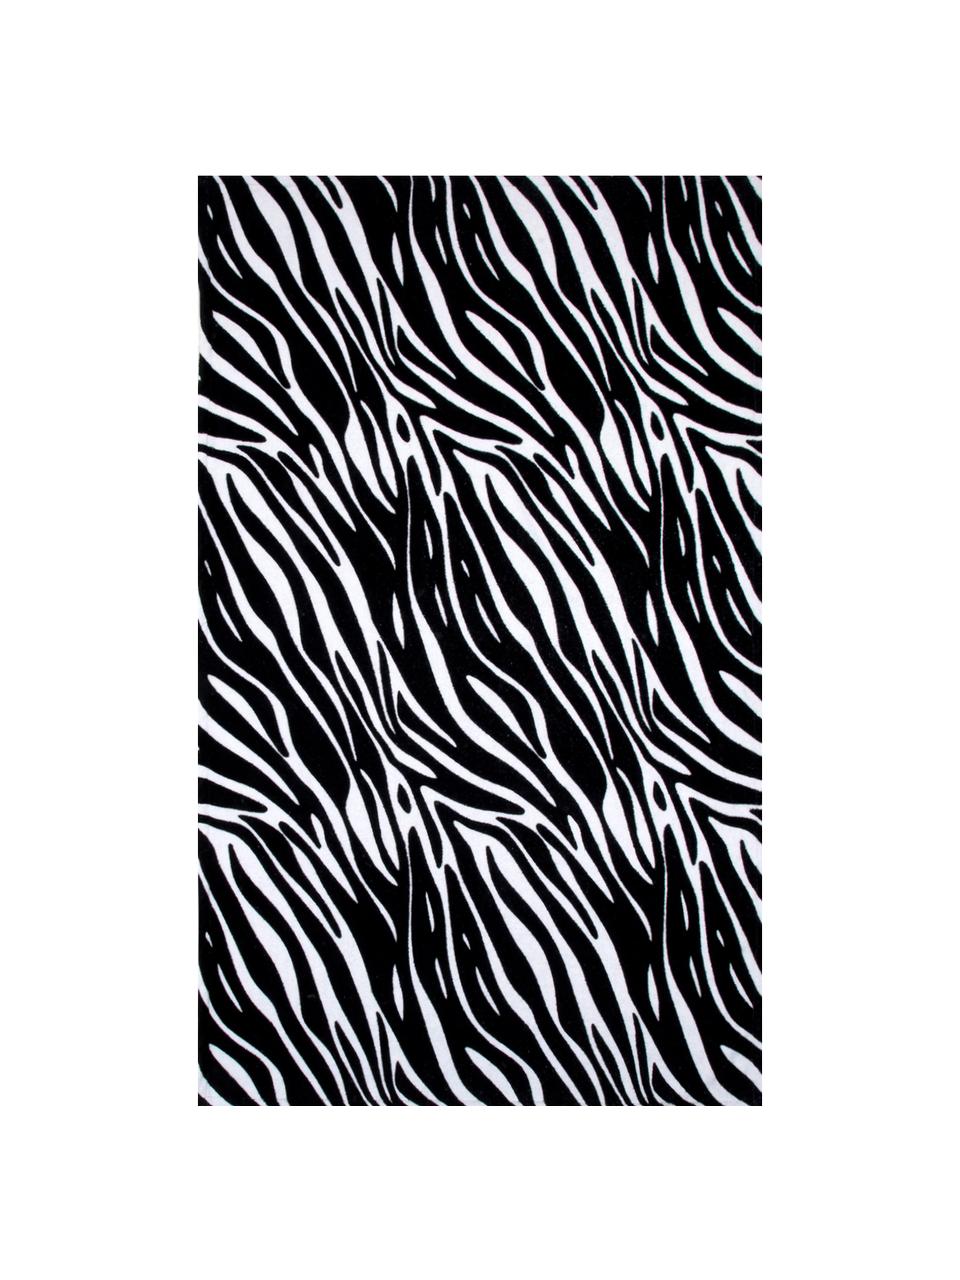 Telo mare Zebra, 100% cotone, qualità leggera 350 g/m², Nero, bianco, Larg. 90 x Lung. 160 cm